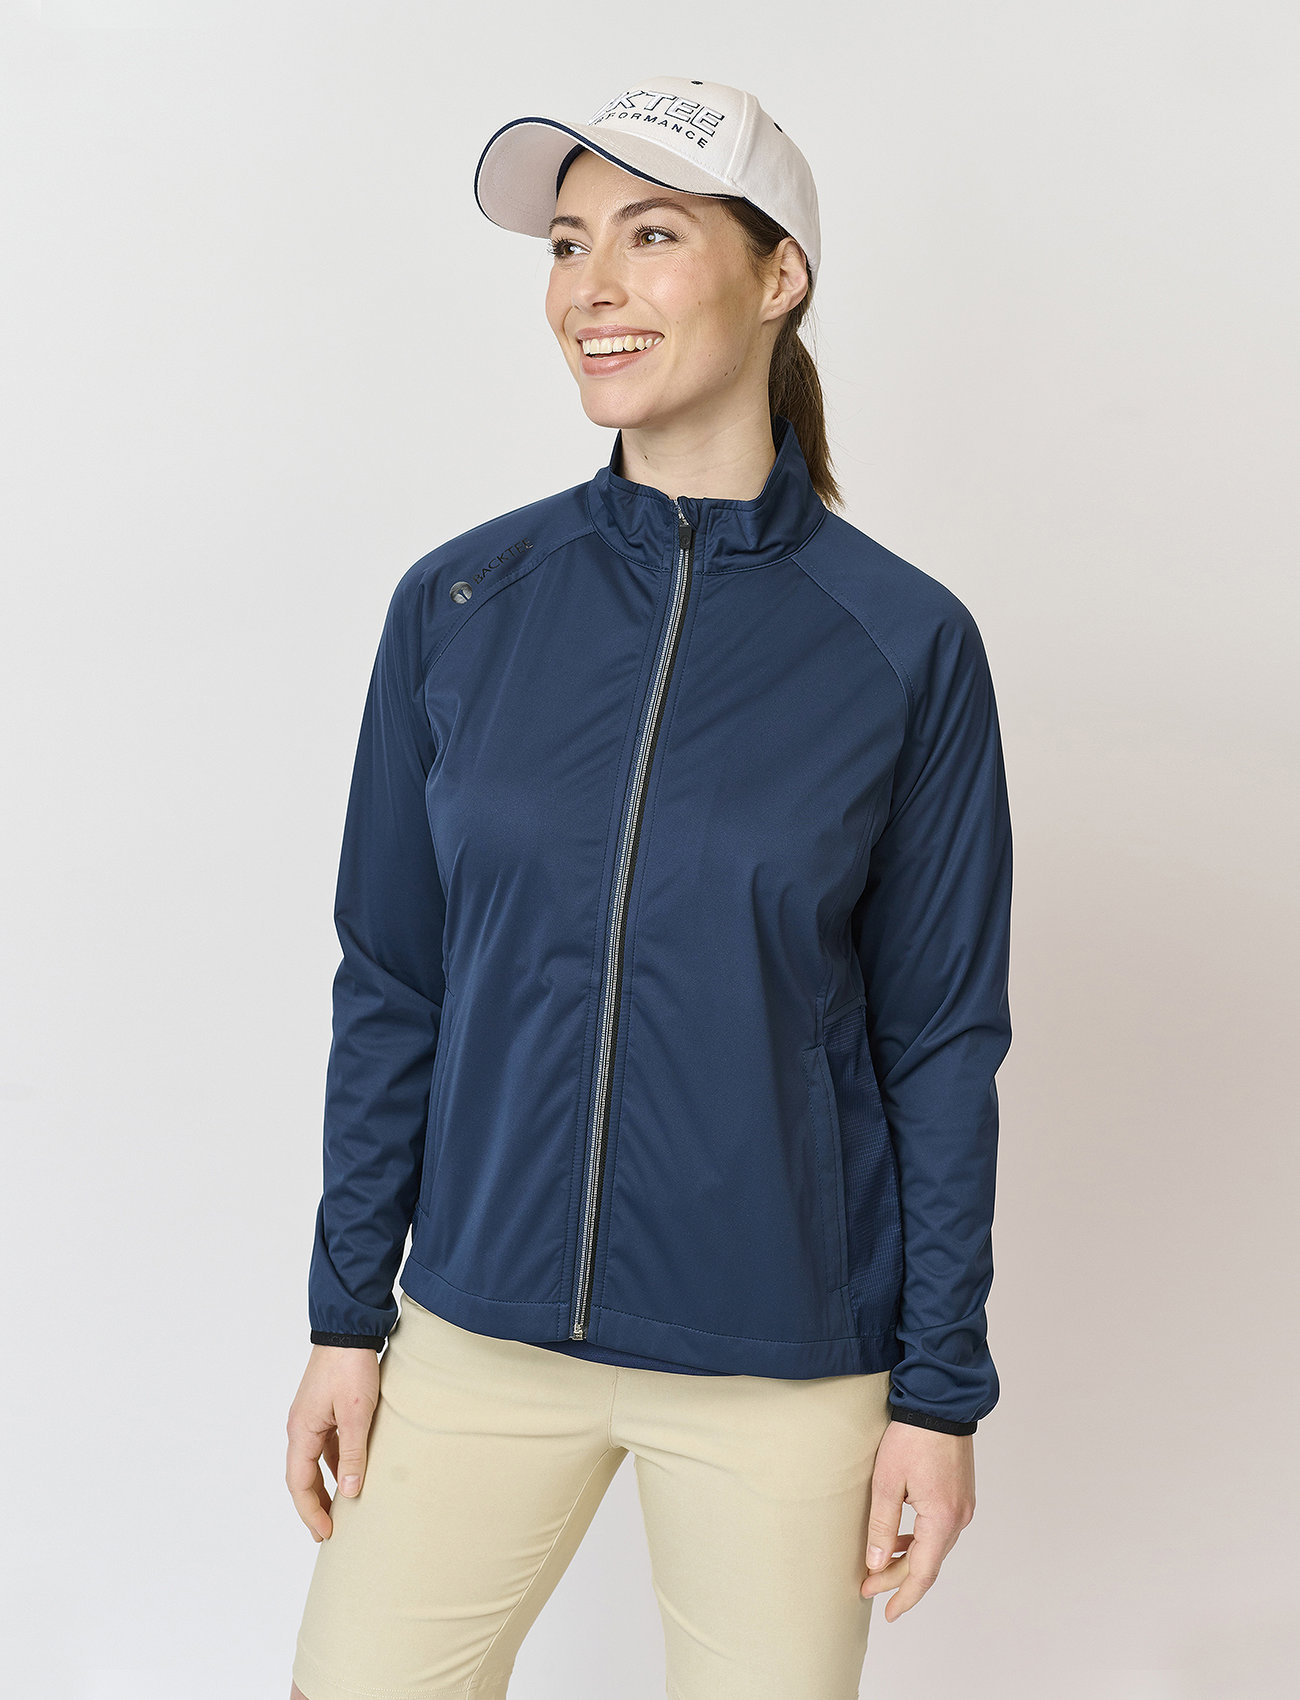 BACKTEE - Ladies Ultralight Wind Jacket - golfjassen - navy - 1